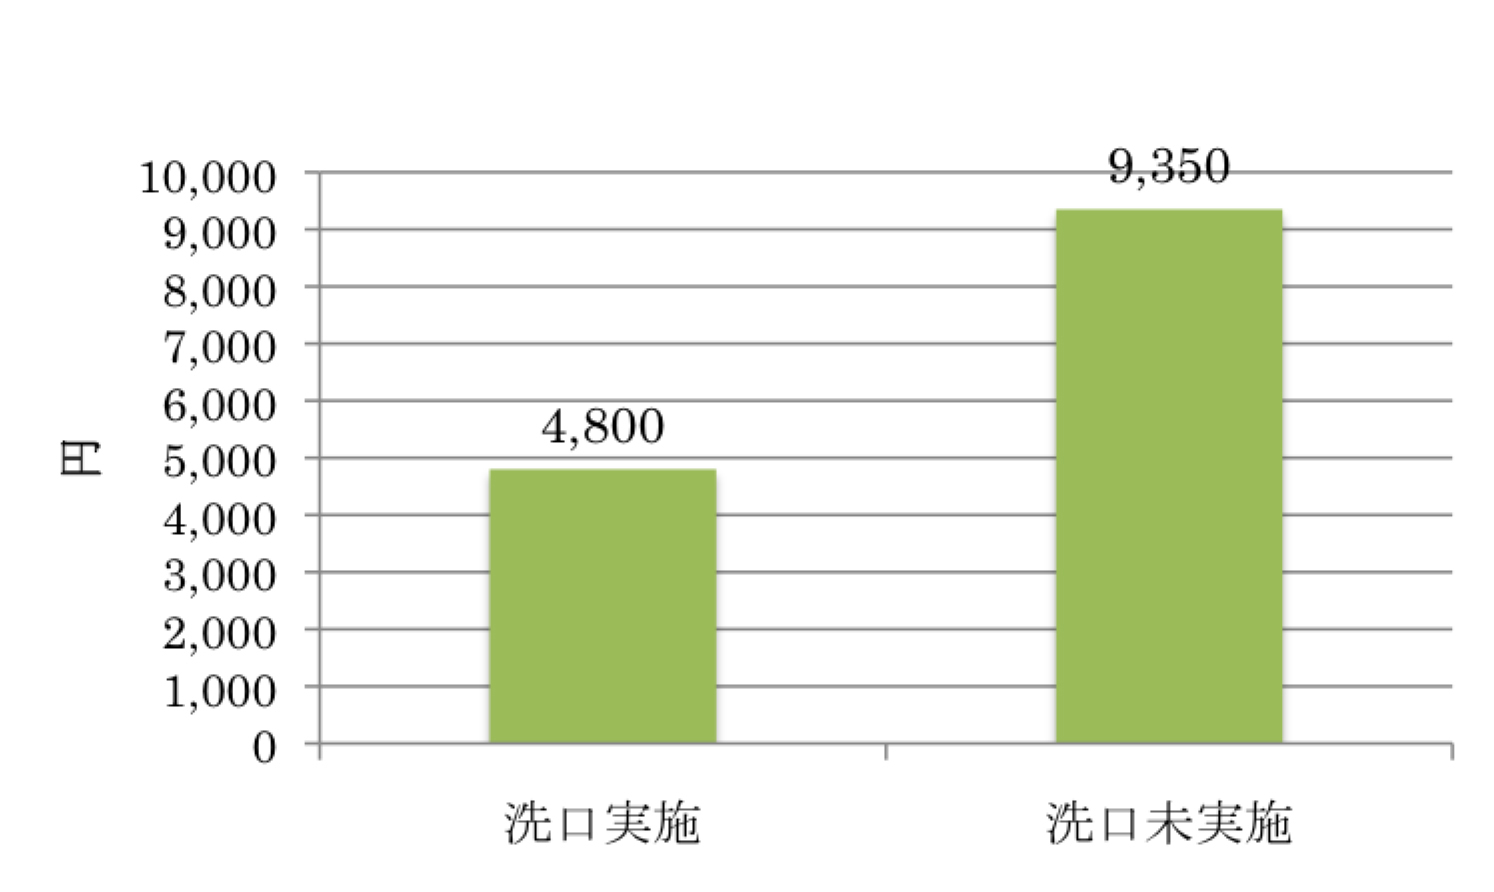 図6 フッ化物洗口の経済効果 (新潟県の10〜14歳 歯科医療費調査から)